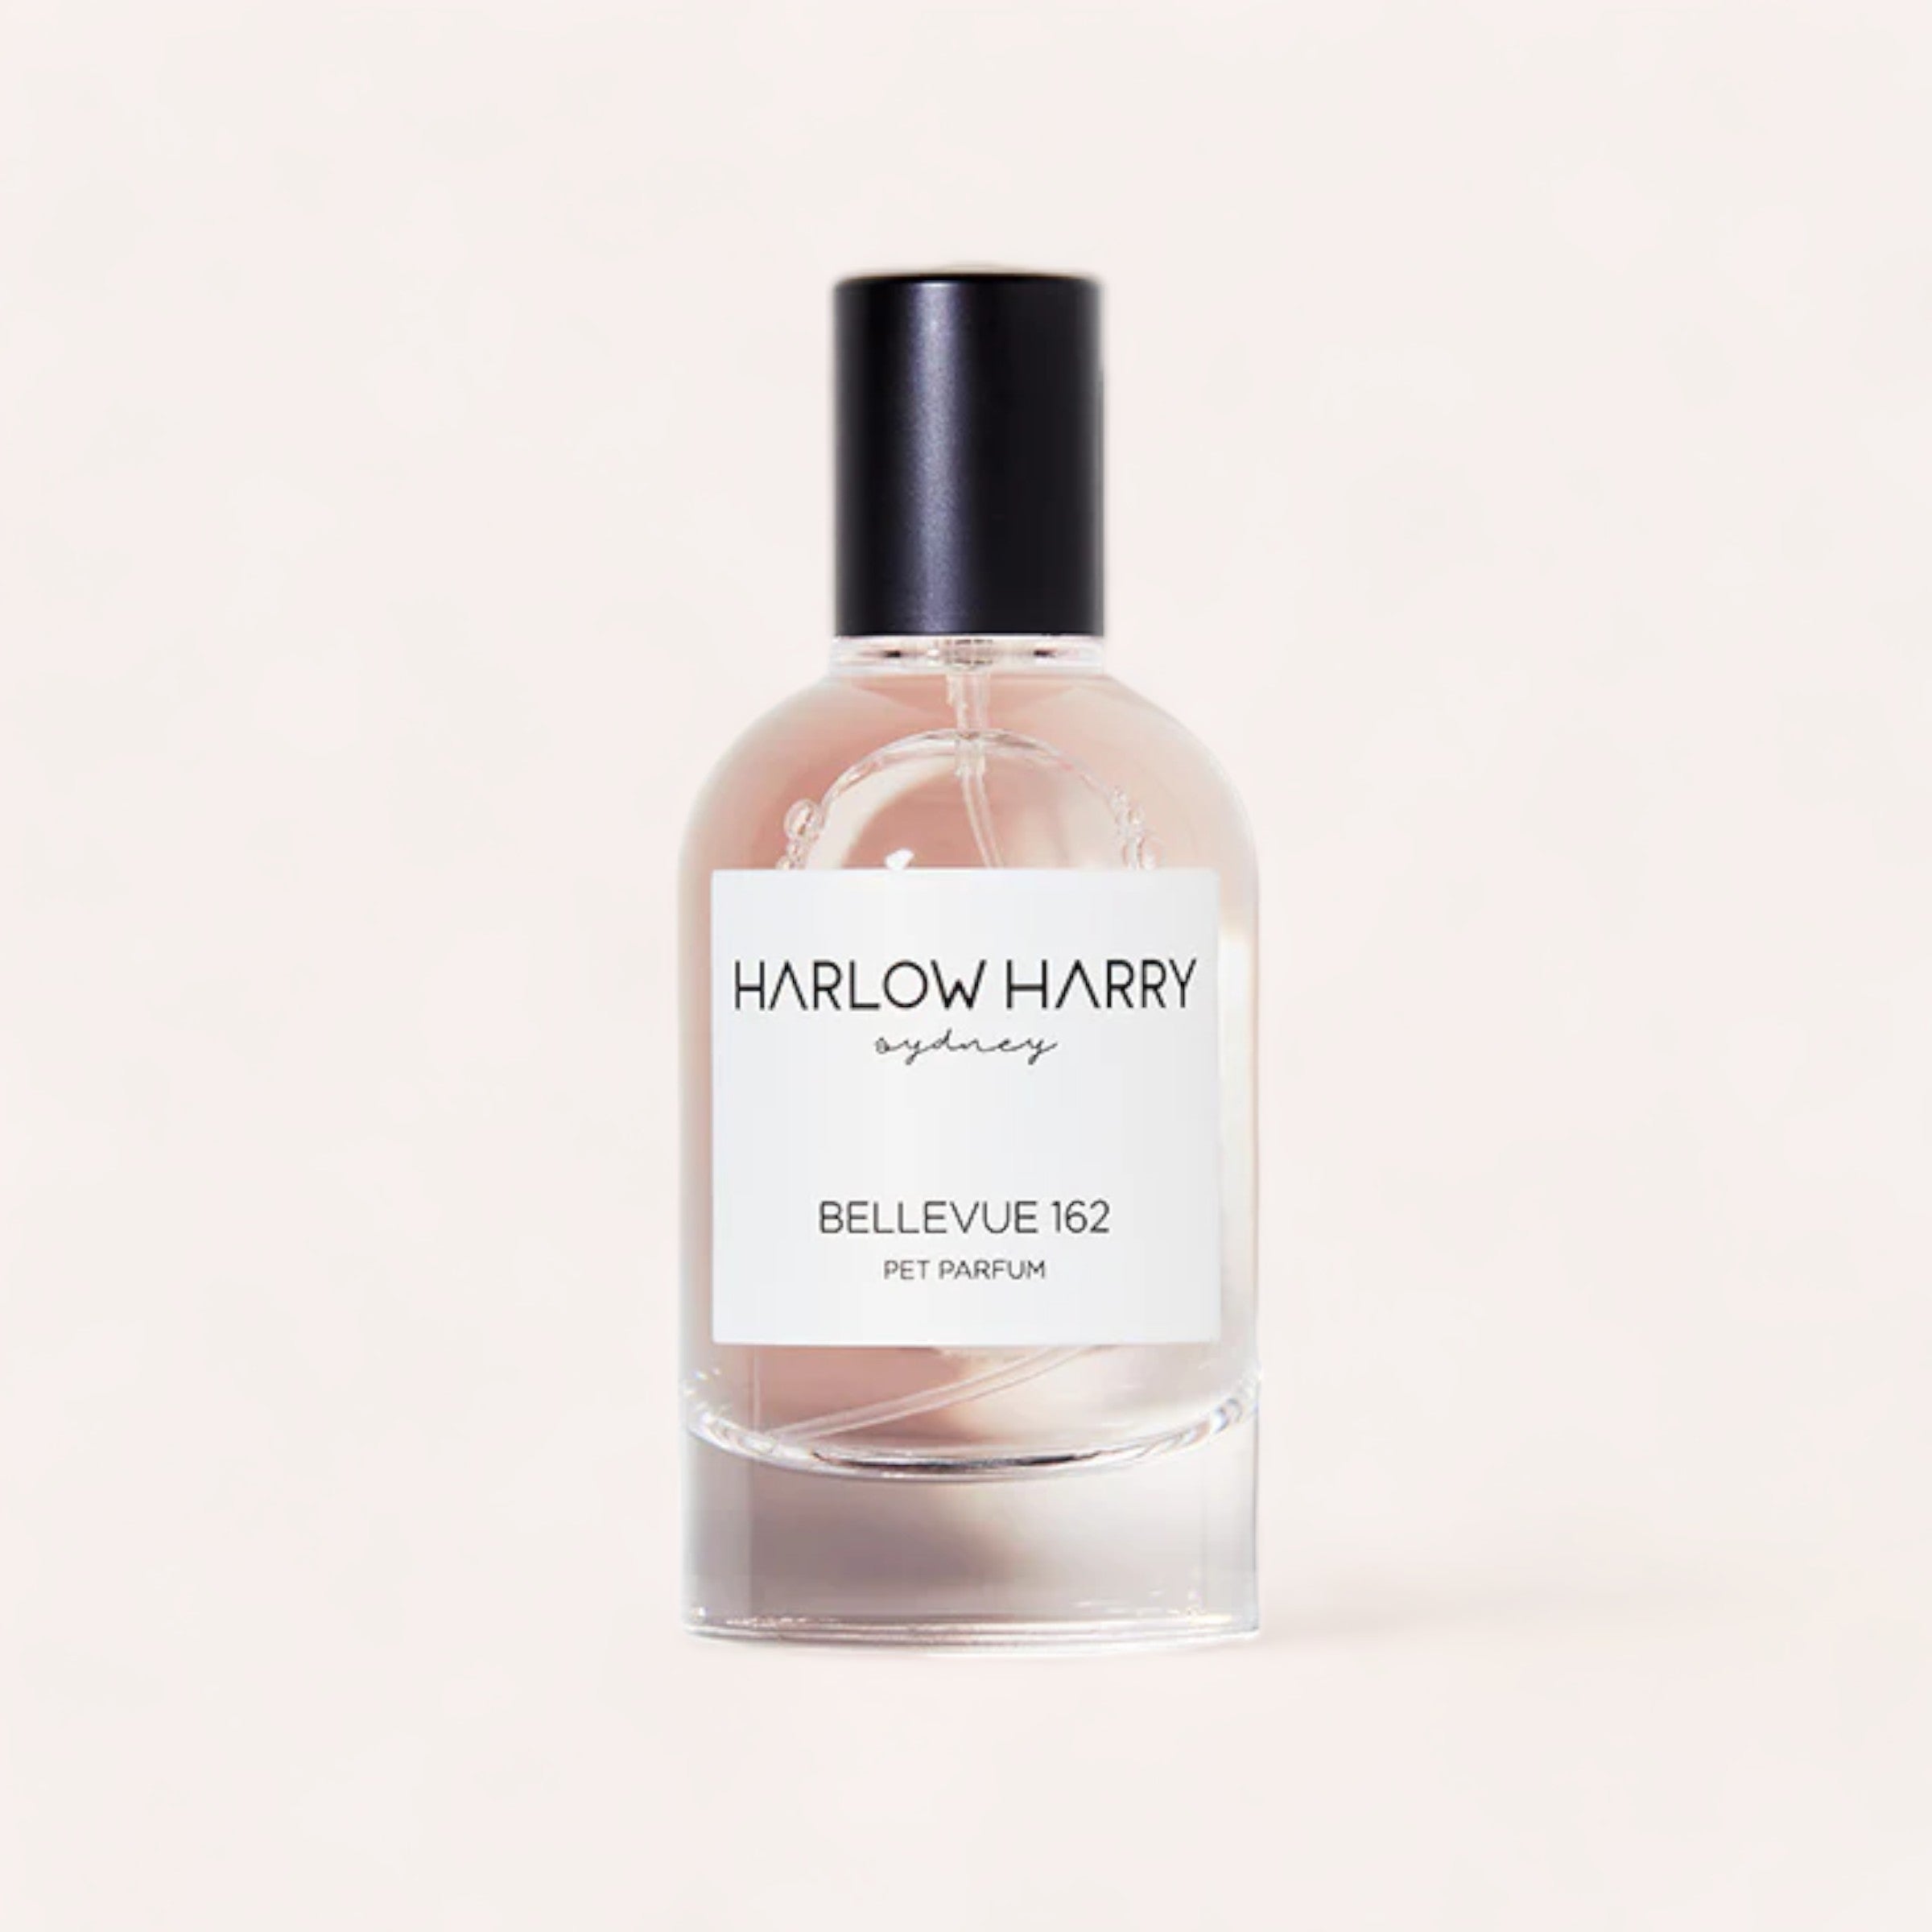 Bellevue 162 pet perfume by harlow harry